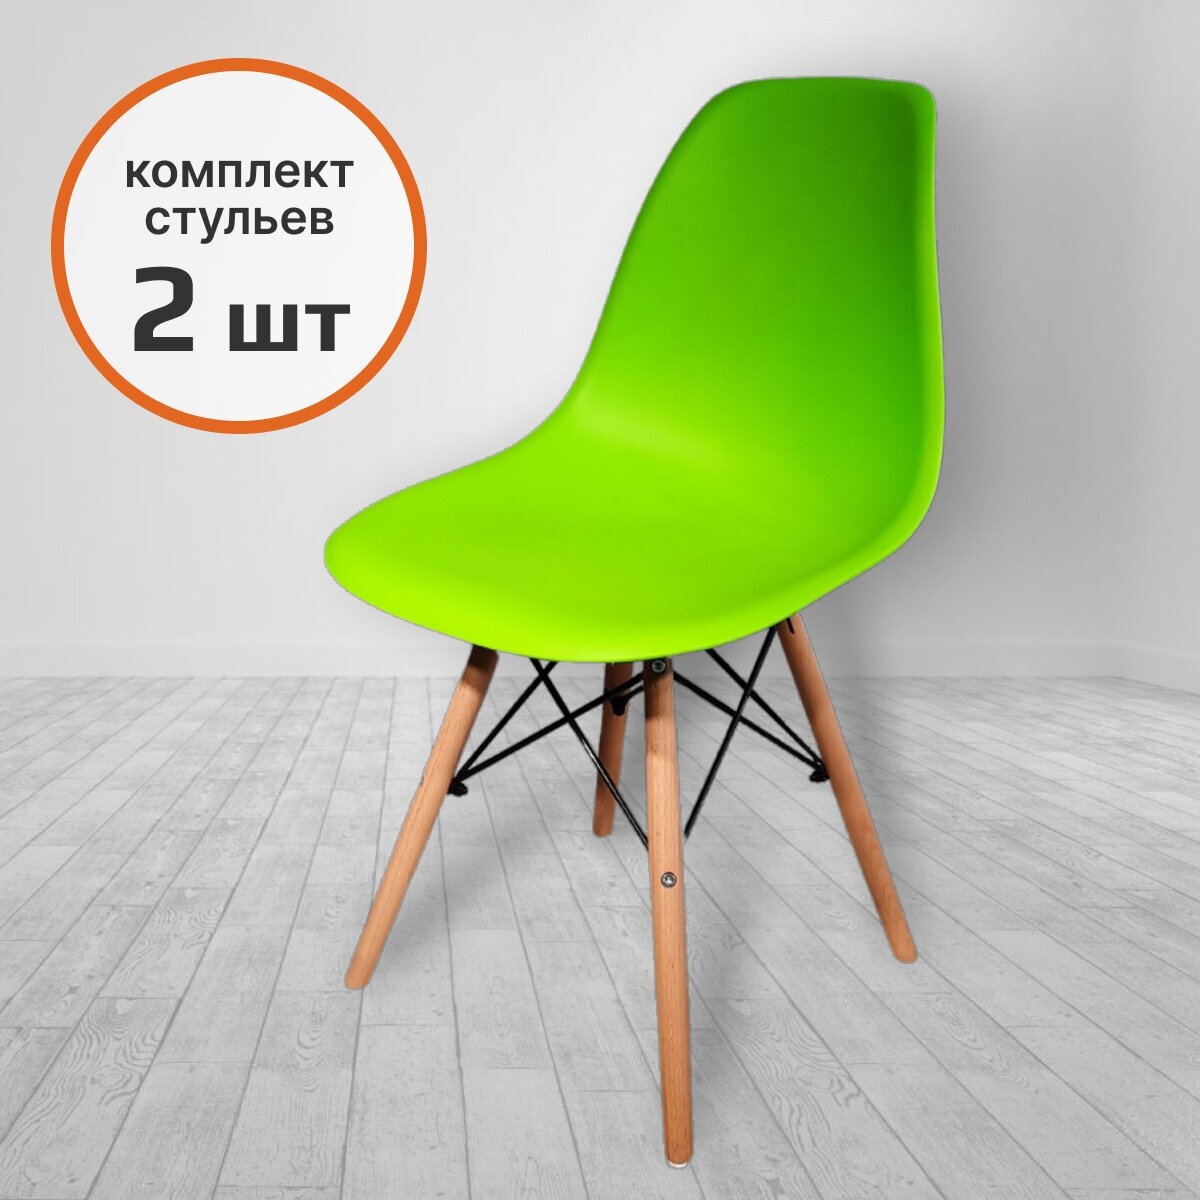 Комплект стульев для кухни Alest в стиле Eames, пластик/дерево, цвет зеленый, 2 шт